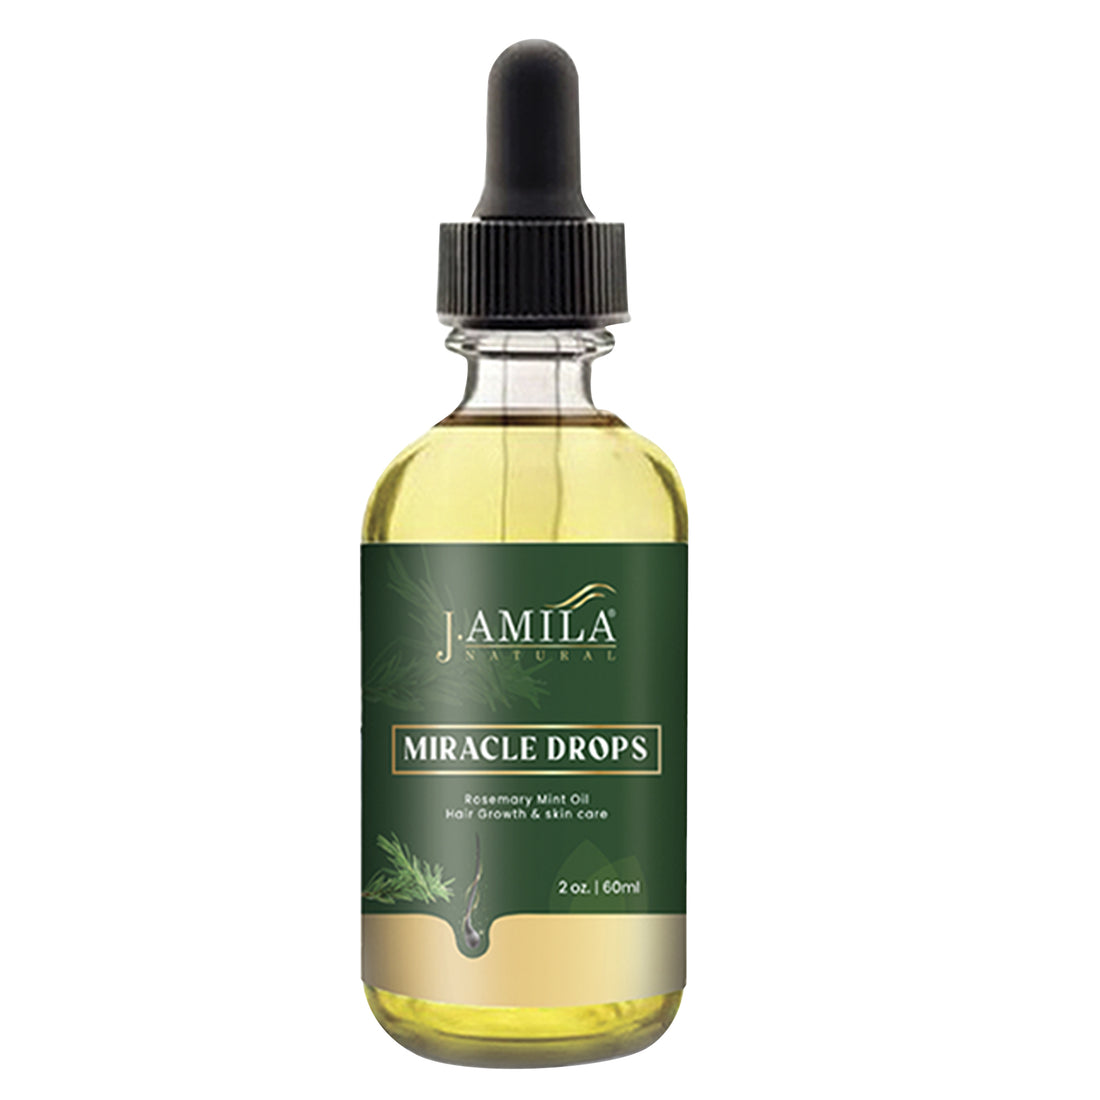 J. AMILA Natural Miracle Drops Rosemary Mint Oil Hair (2oz)